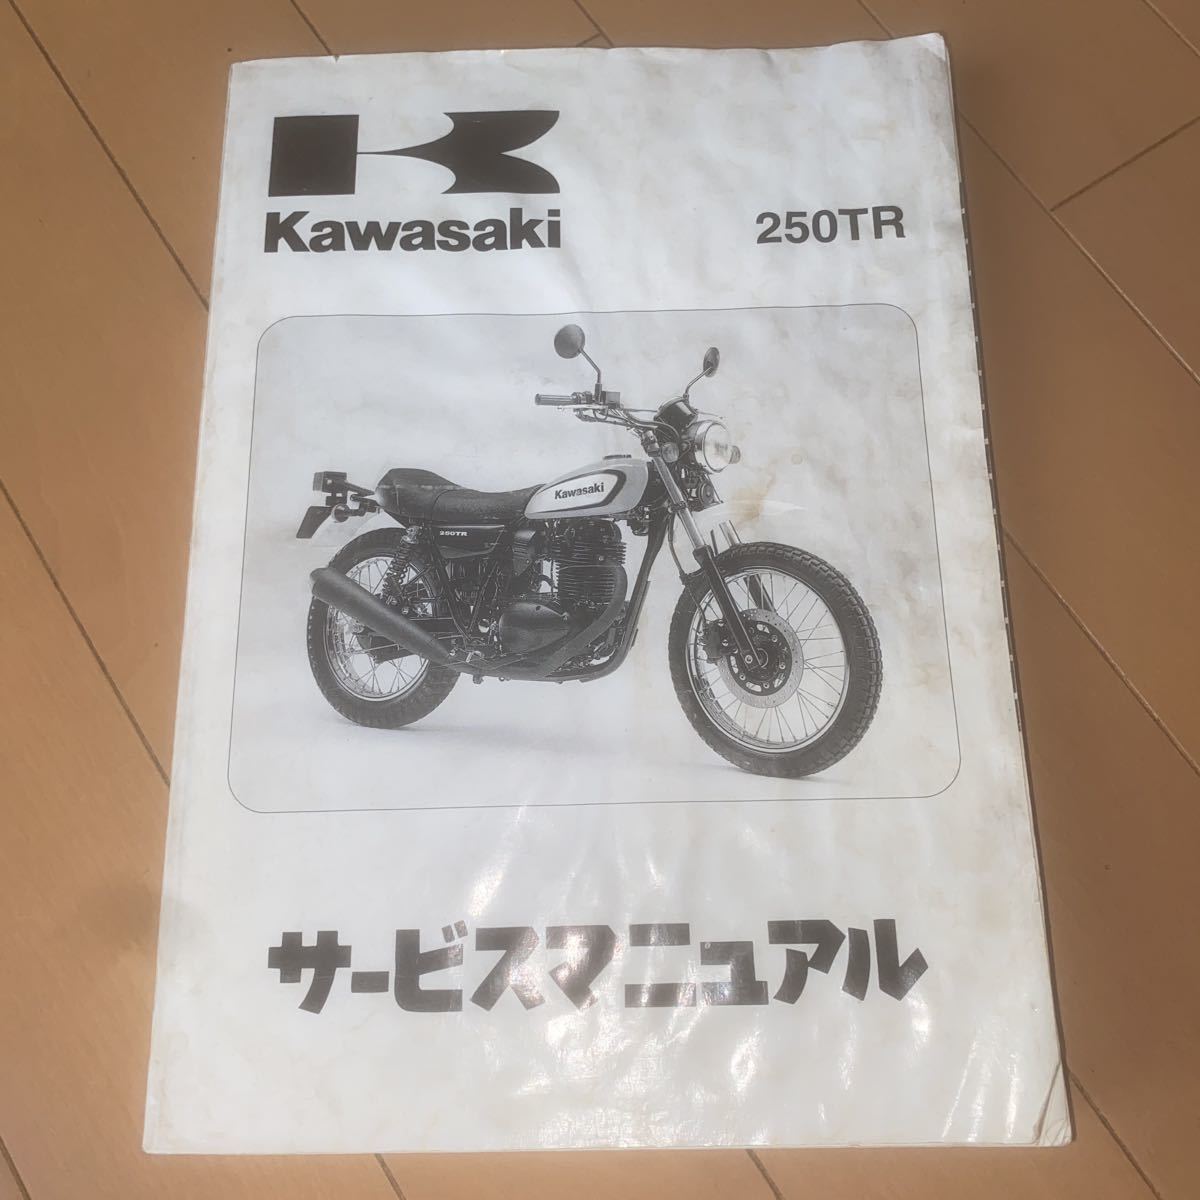  Kawasaki 250TR FI оригинальный товар руководство по обслуживанию BJ250F in jen расческа .n